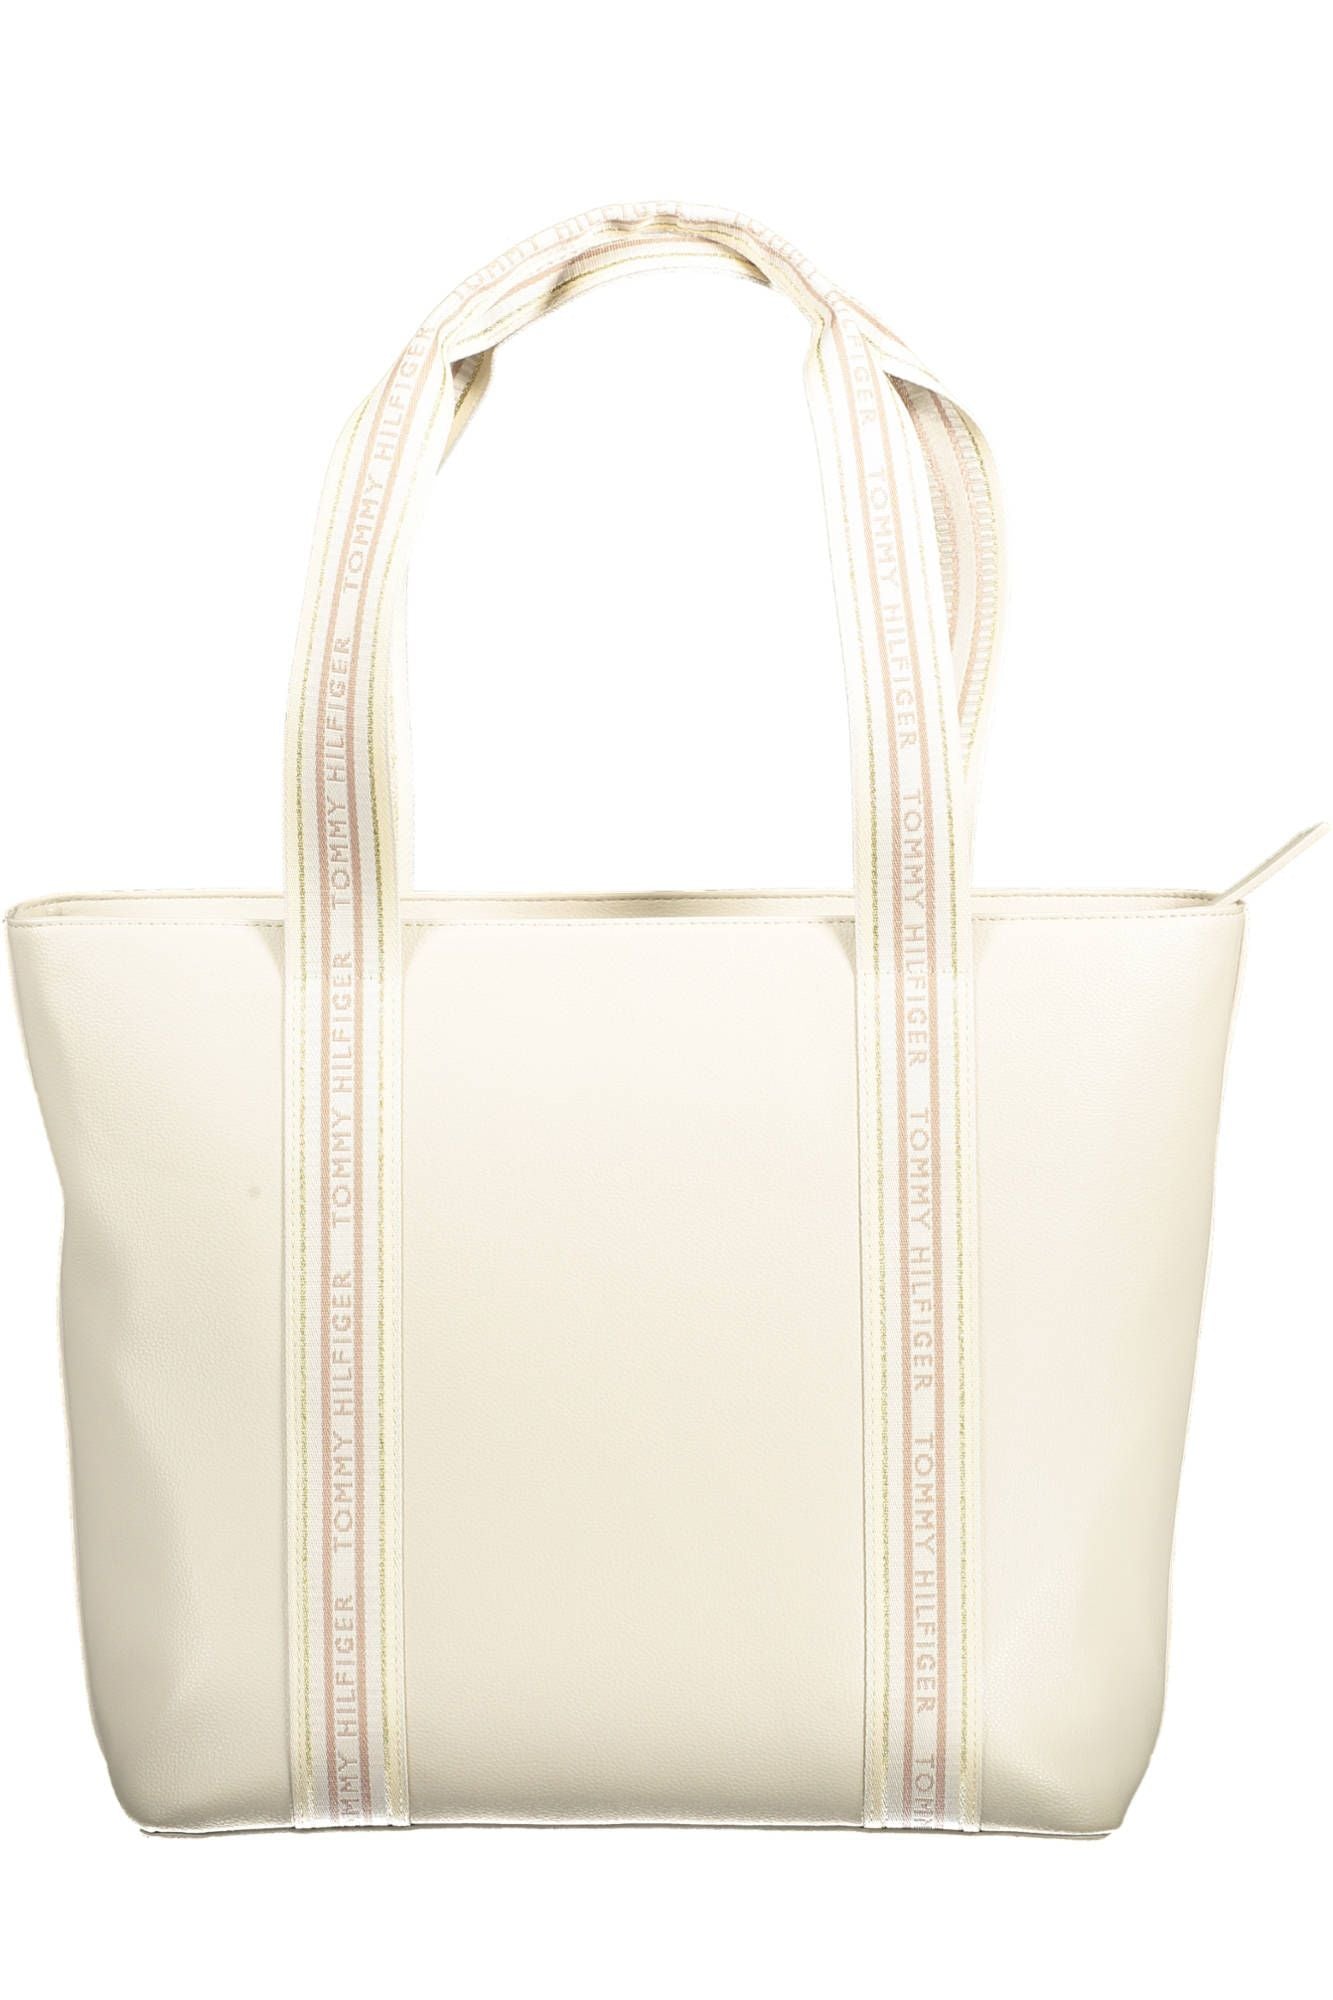 Chic Beige Shoulder Bag with Contrasting Details